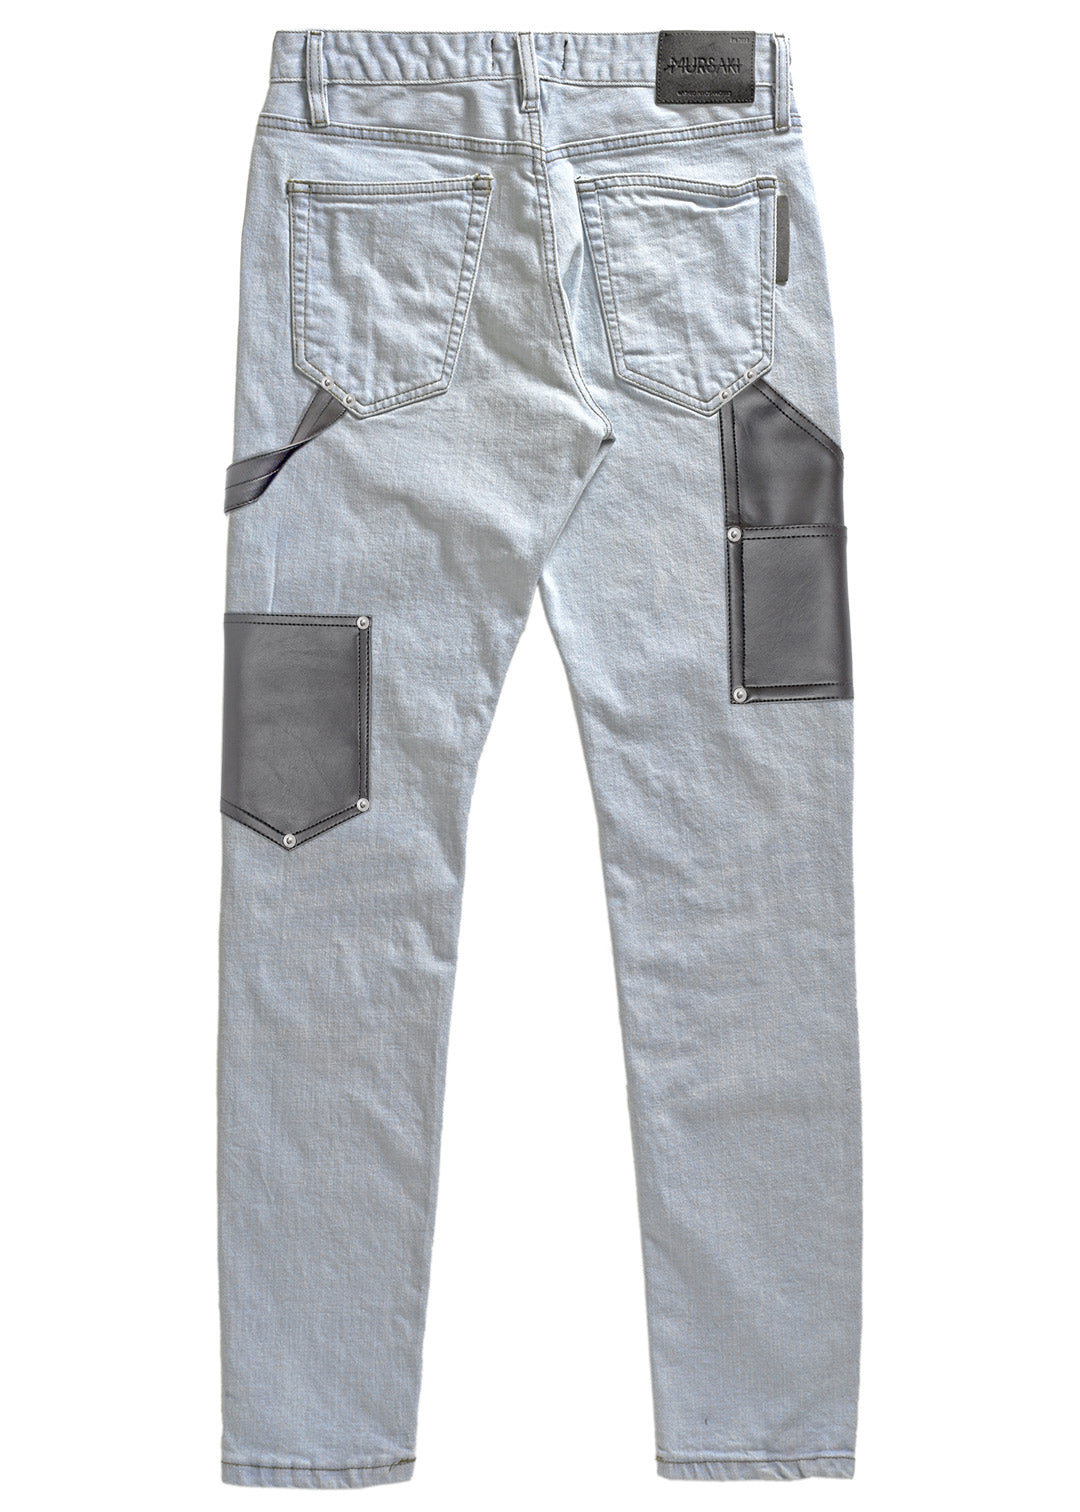 Mursaki Denim Carpenter Jean (Leather)339-103CL